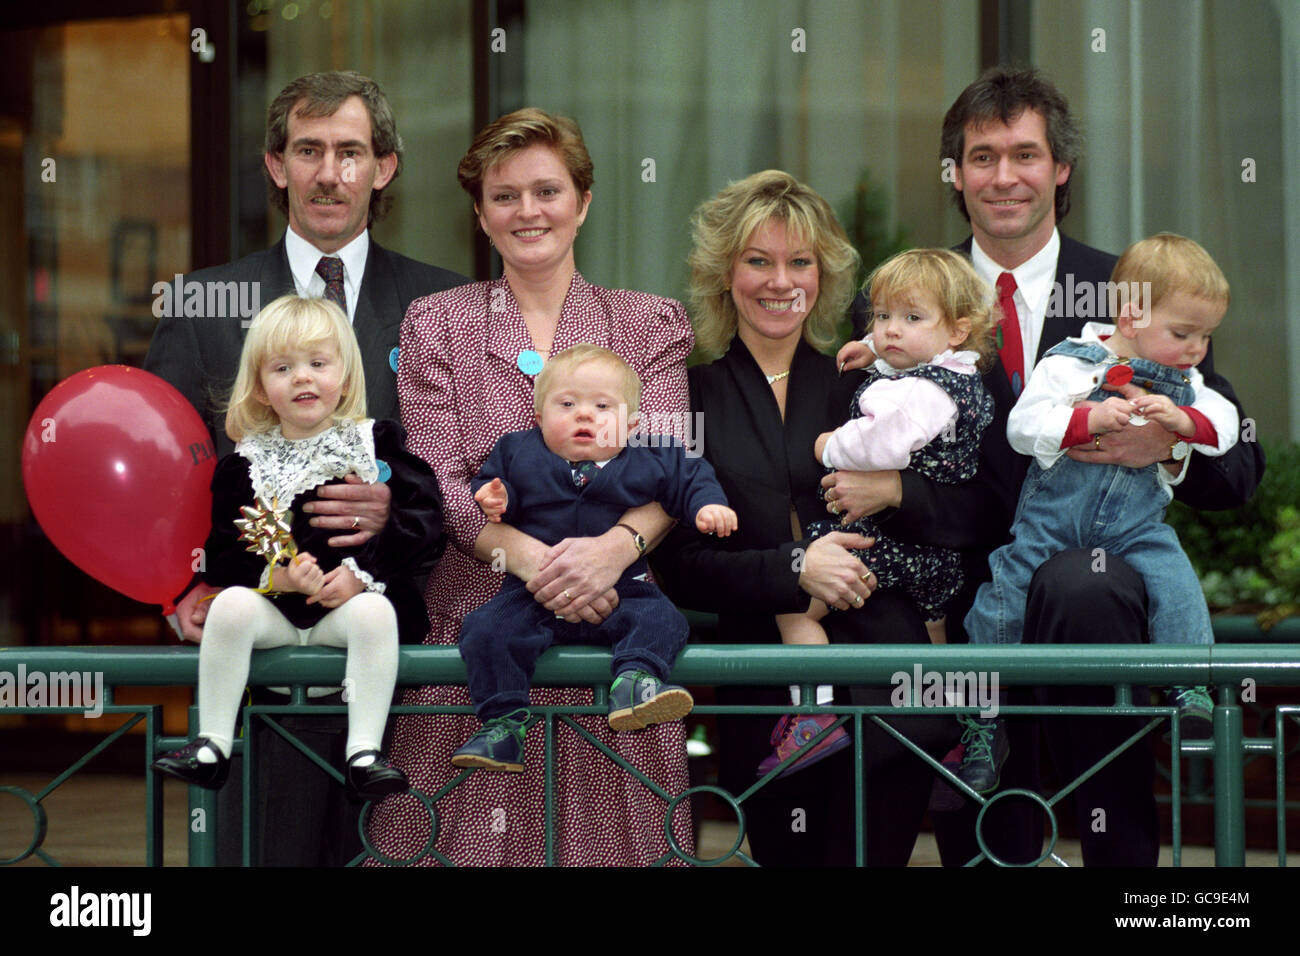 Eltern des Jahres Paul & Lynne Baker von der Isle of Wight mit ihren Kindern Charlee (3) & Joe (1), die an Down-Syndrom leidet, nachdem sie ihre Auszeichnung von Dr. Hilary Jones (r) erhalten haben. Dies ist Dr. Jones erster Auftritt mit seiner Frau Sarah seit seiner Affäre. Stockfoto